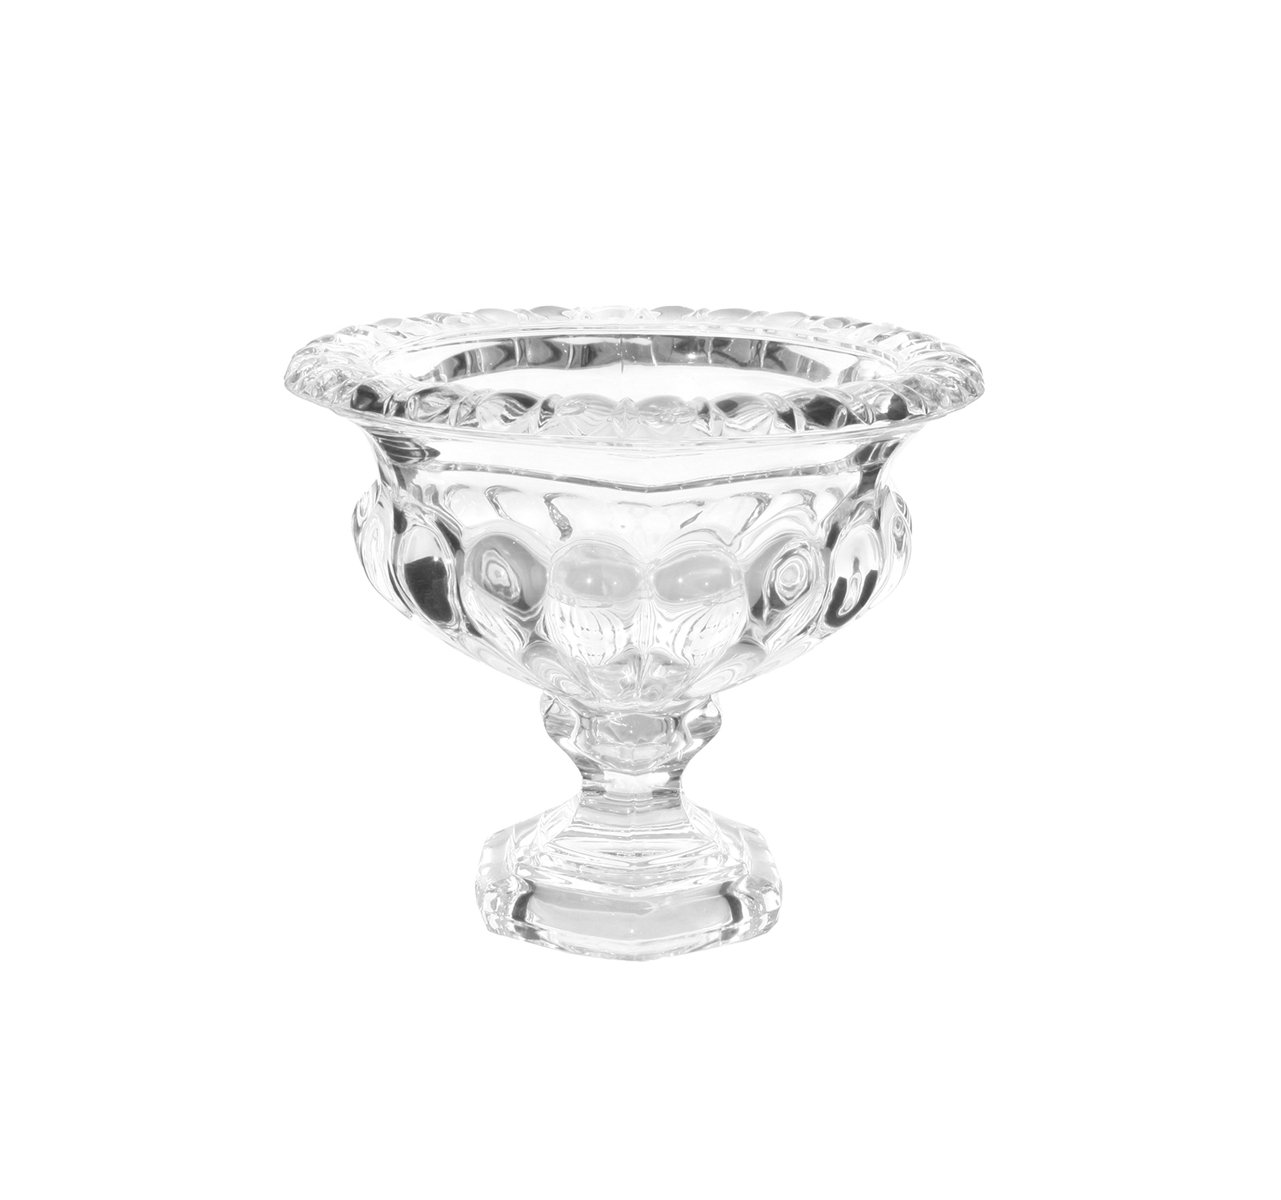 Mellemstor glasskål/-vase på fod
H: 16 cm